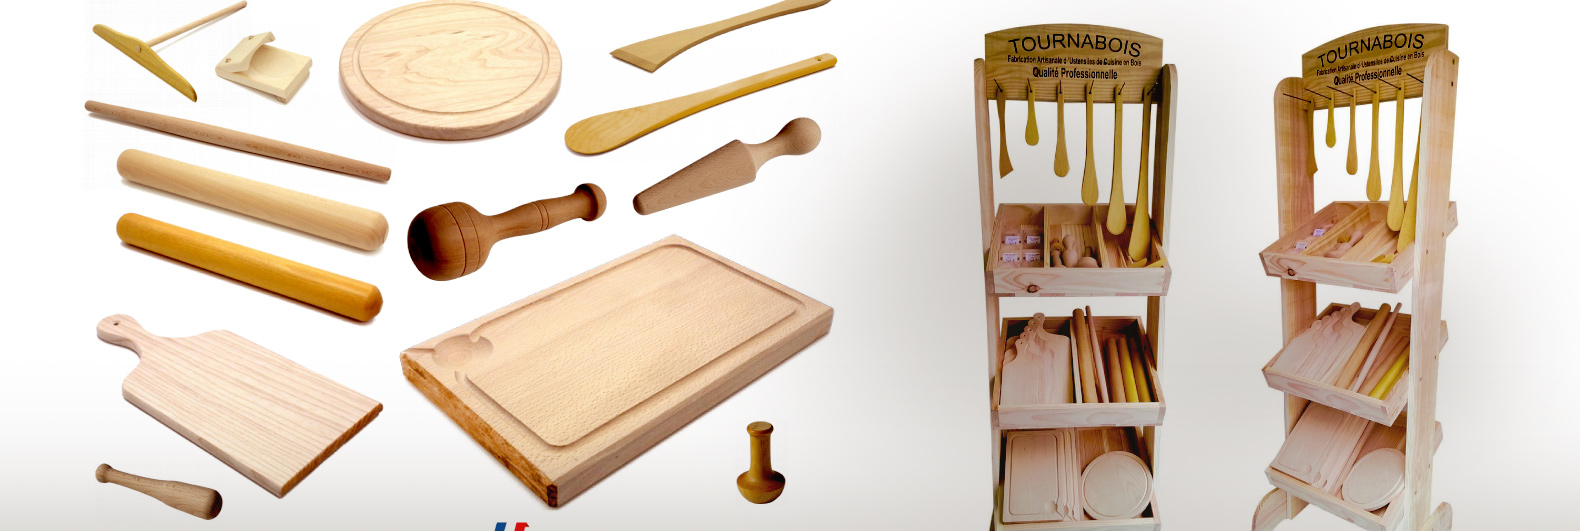 Fabriquez vos propres ustensiles de cuisine en bois dur - Bois Royal